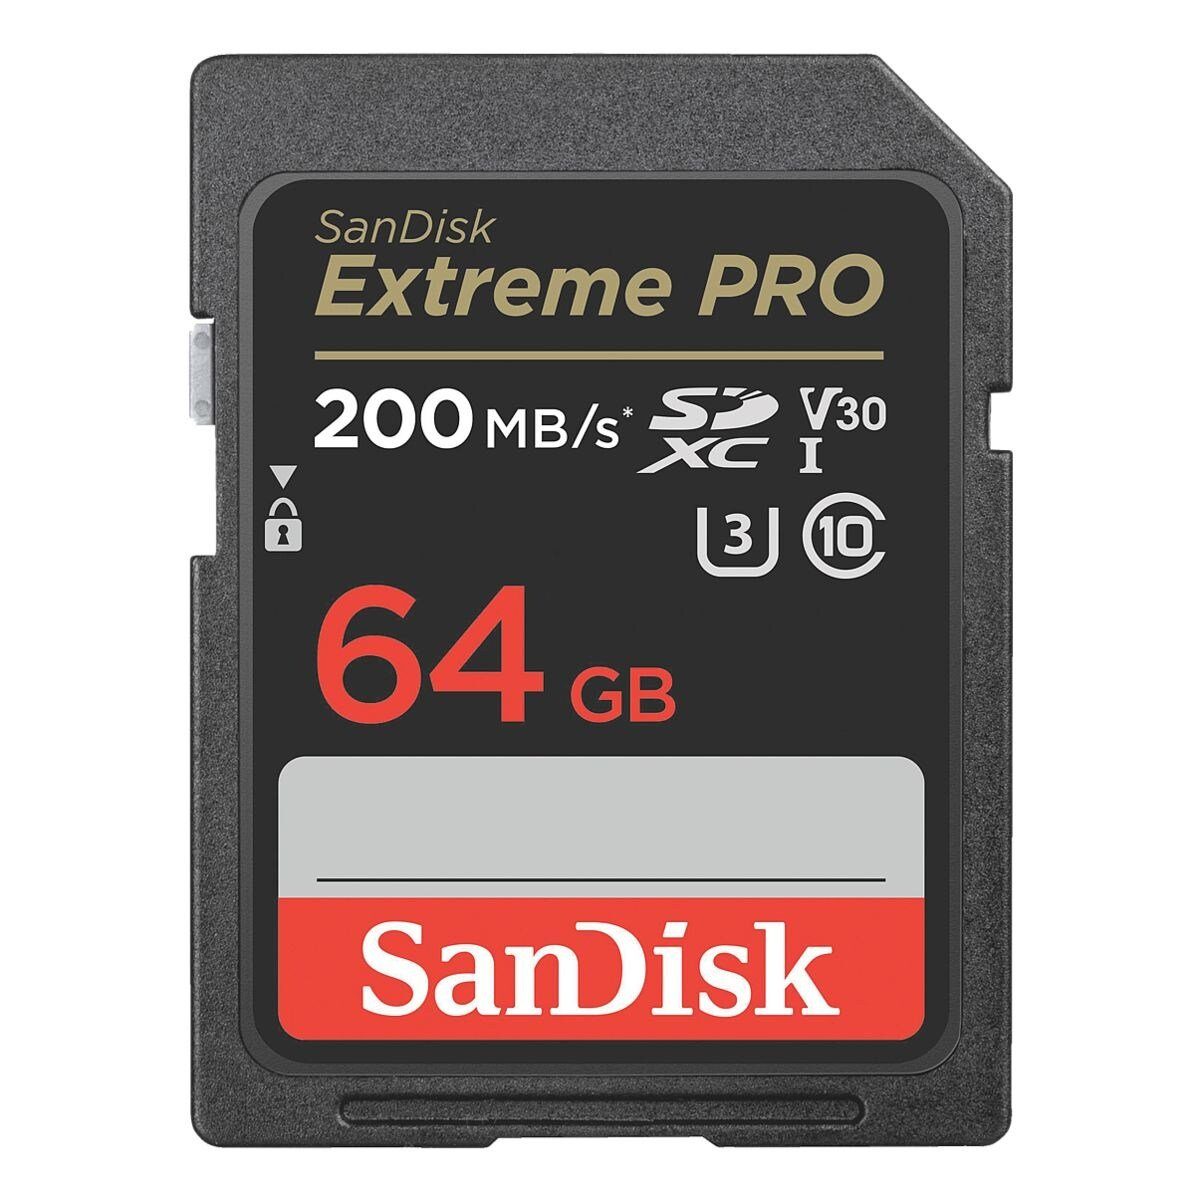 Sandisk Extreme Pro Speicherkarte (64 GB, 200 MB/s Lesegeschwindigkeit, für Spiegelreflexkameras und Camcorder)